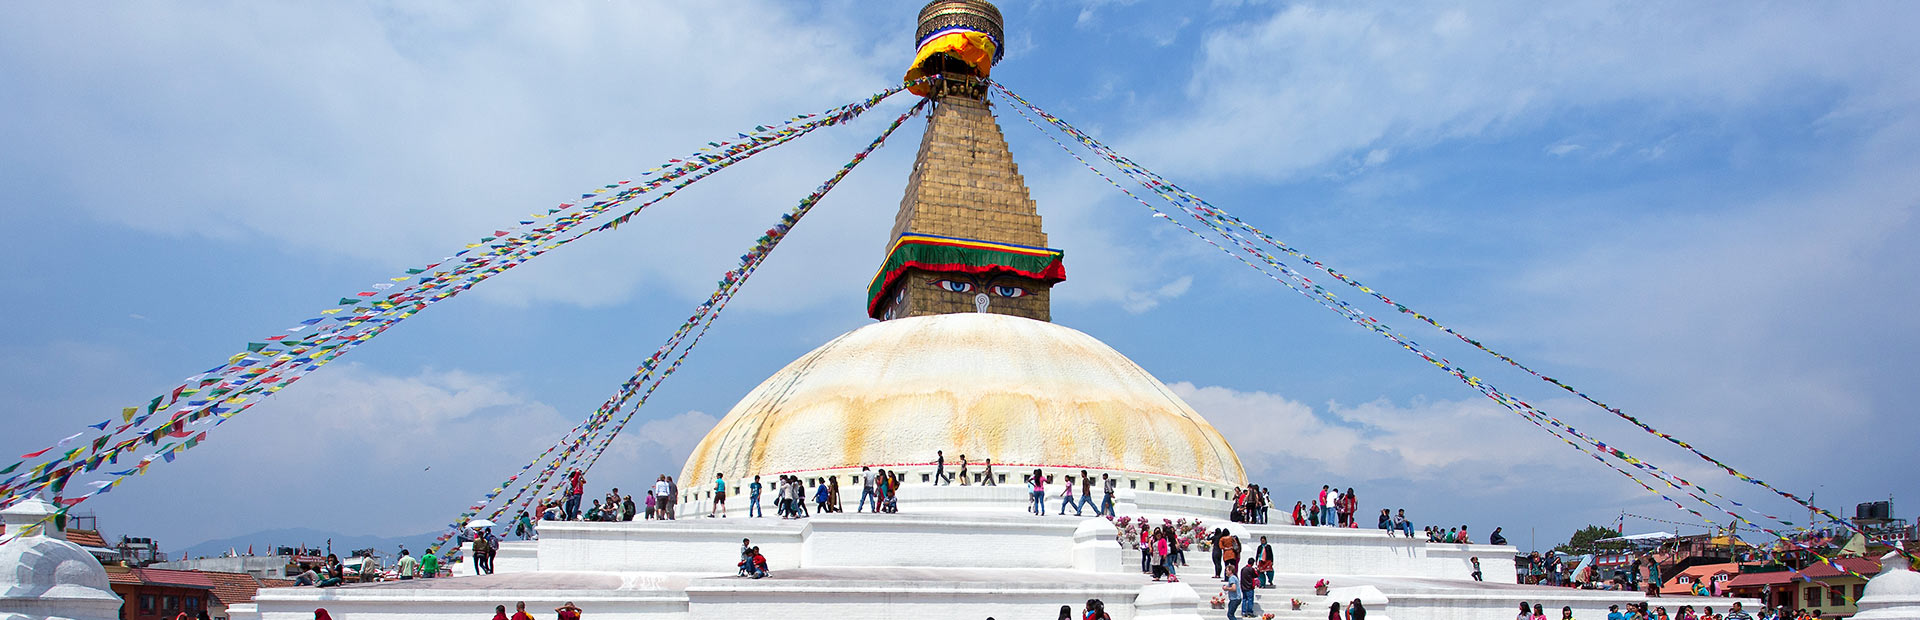 Flights from Kathmandu to Lhasa and Lhasa to Kathmandu